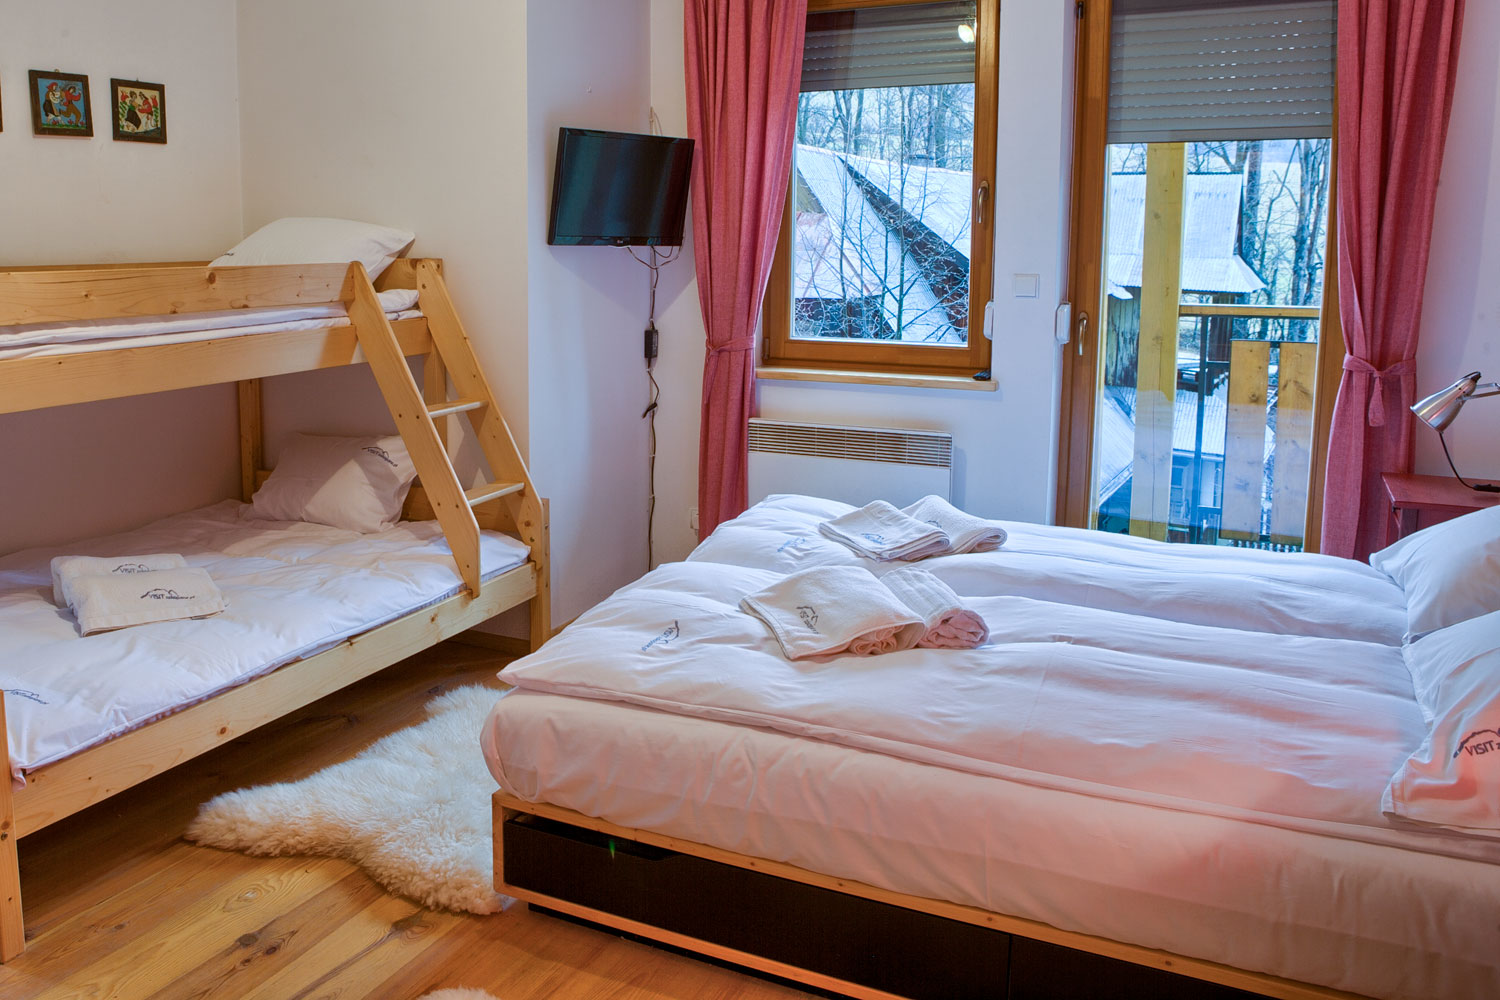 Podwójne łóżko oraz piętrowe łóżko w sypialni z balkonem